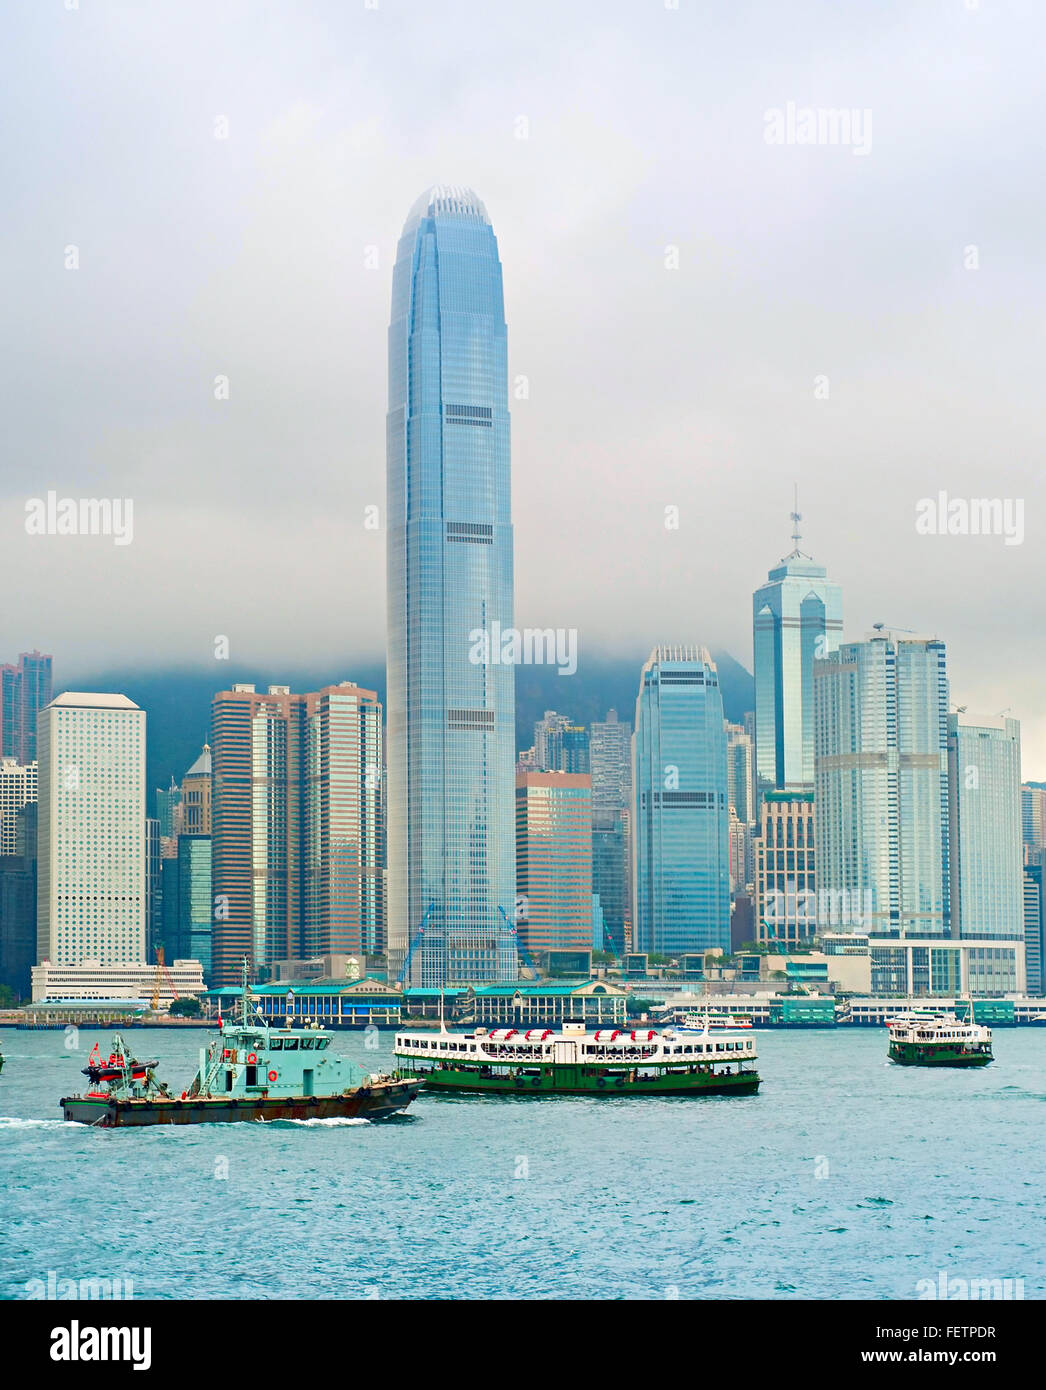 La baie de Hong Kong avec beaucoup des navires et les nuages de pluie Banque D'Images